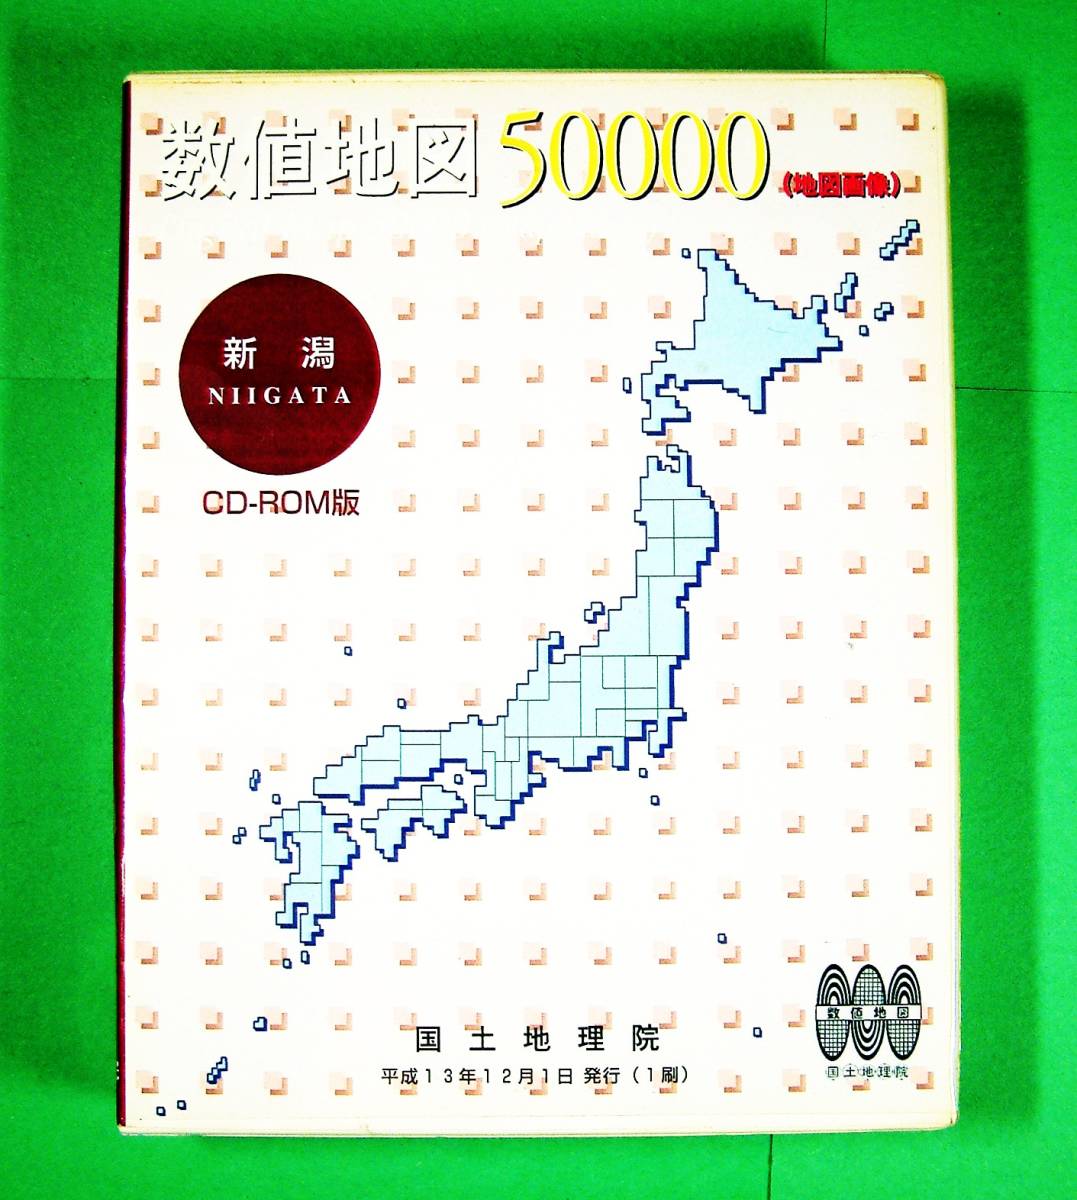 【3967】国土地理院 数値地図50000(地図画像) 新潟 CD-ROM 2001(平成13年)発行 NIIGATA 日本地図センター Digital Map 新潟県 マップ 地図